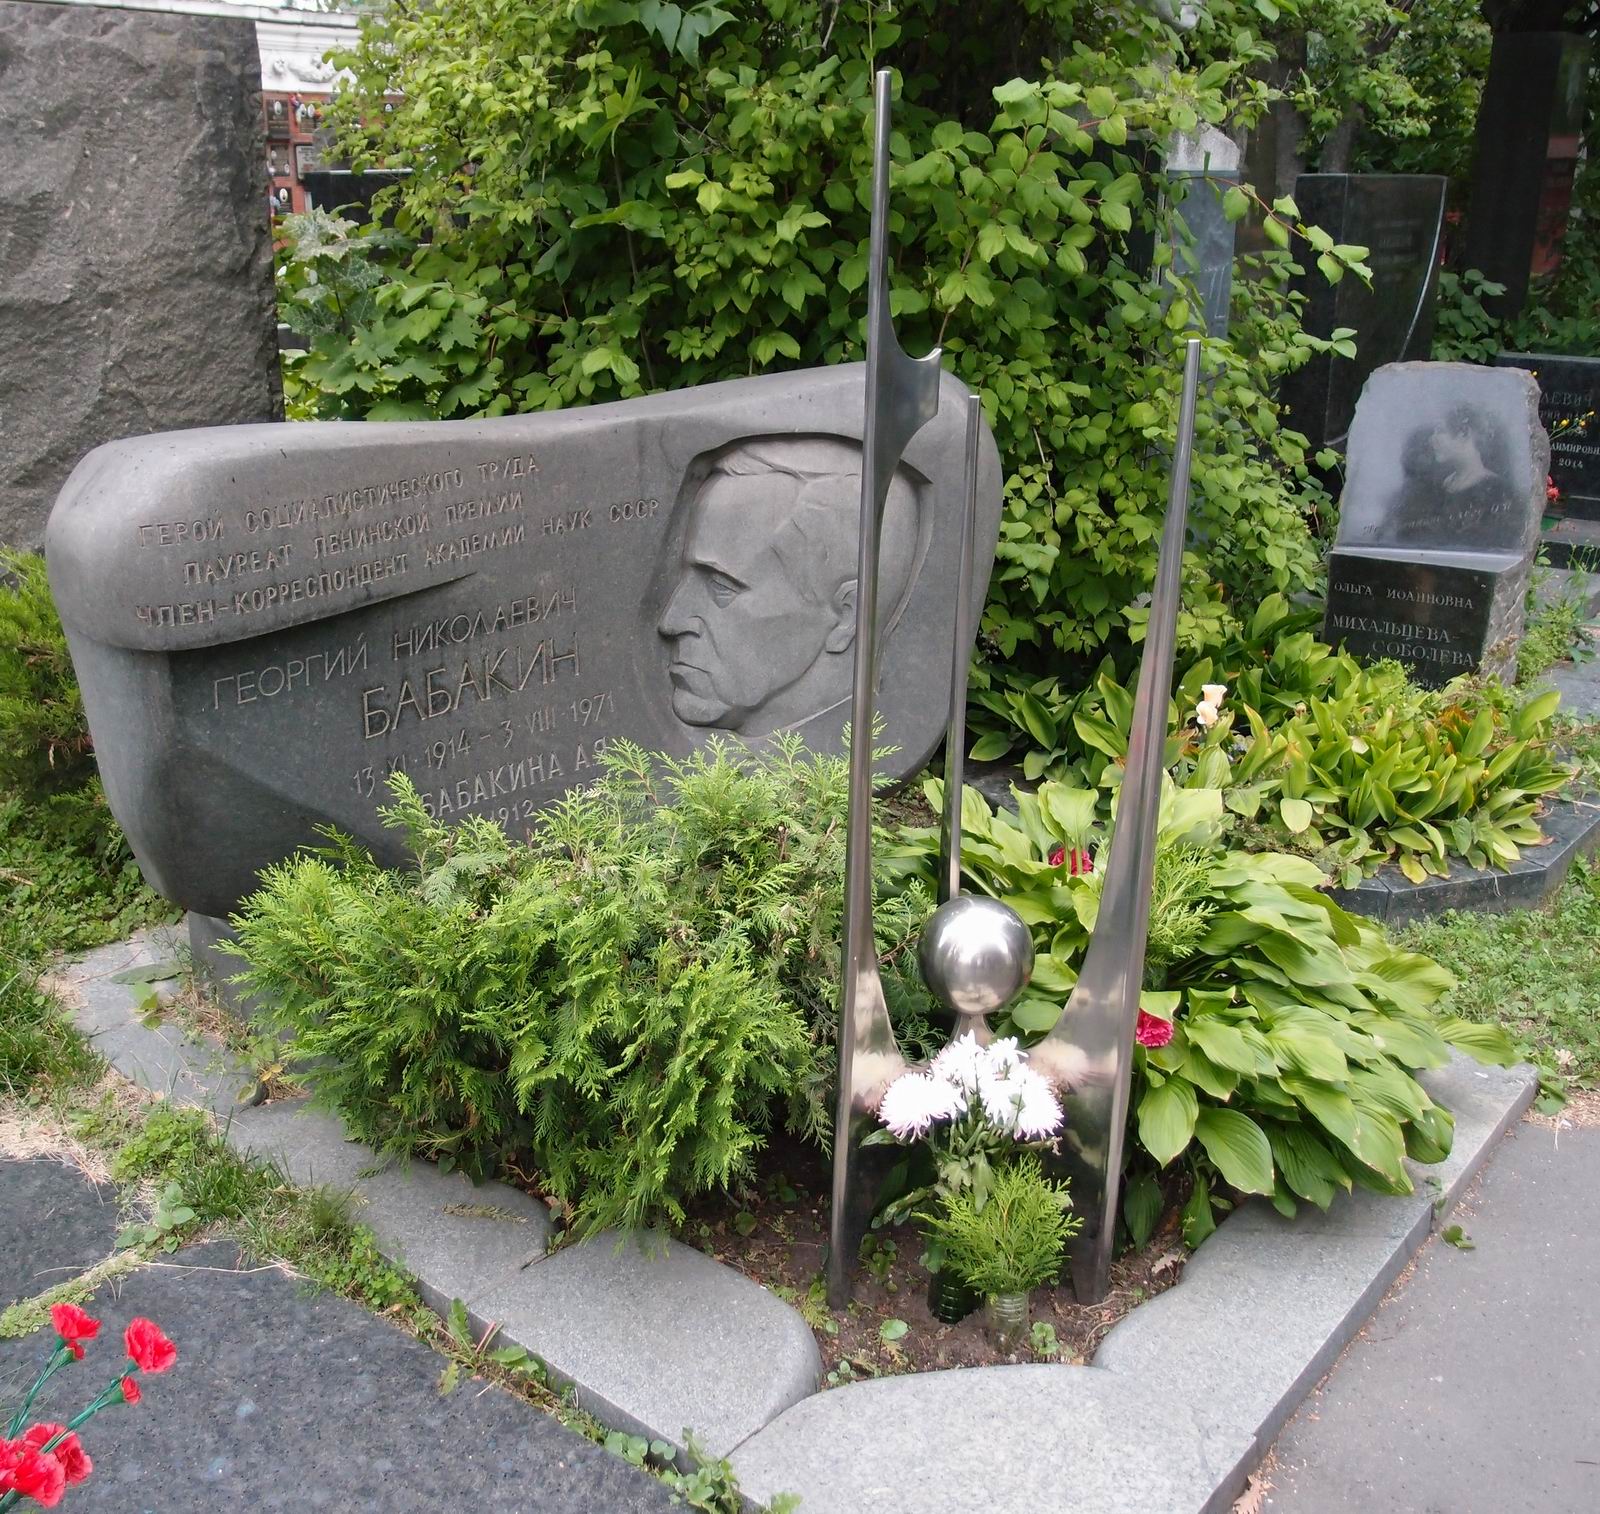 Памятник на могиле Бабакина Г.Н. (1914-1971), ск. Е.Преображанская, арх. В.Чернолусский, на Новодевичьем кладбище (7-17-11).